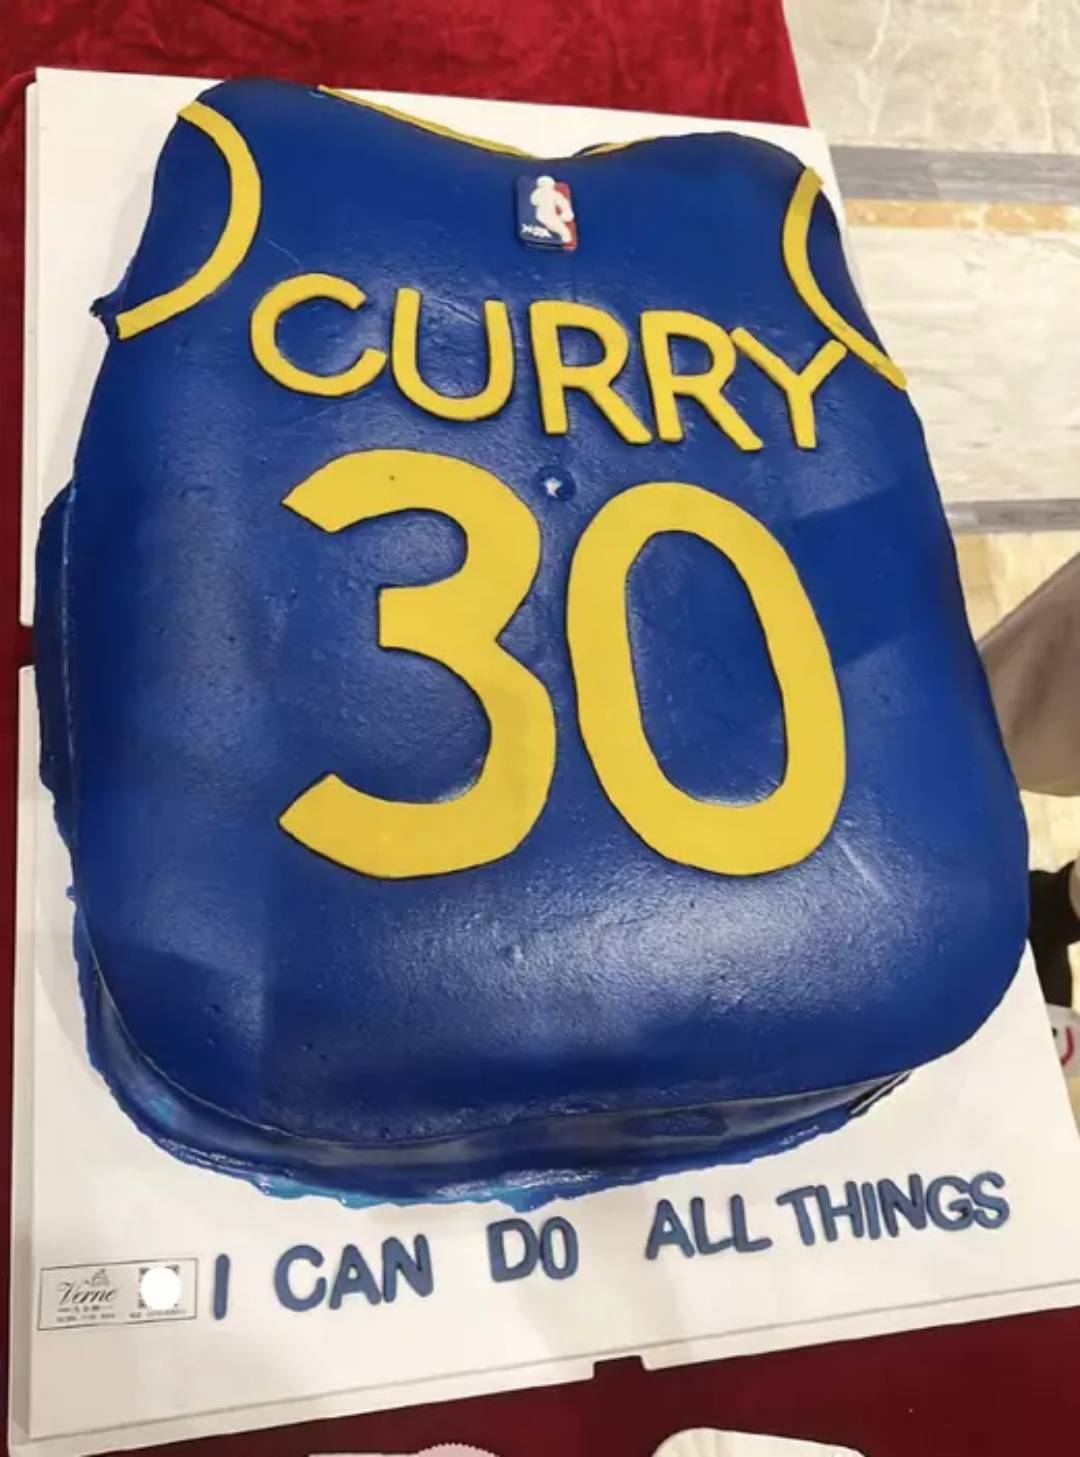 陈妍希 去年7月陈妍希曾晒出以陈晓喜欢的NBA球星Curry球衣为造型的蛋糕为老公庆生，但今年就冇任何行动。